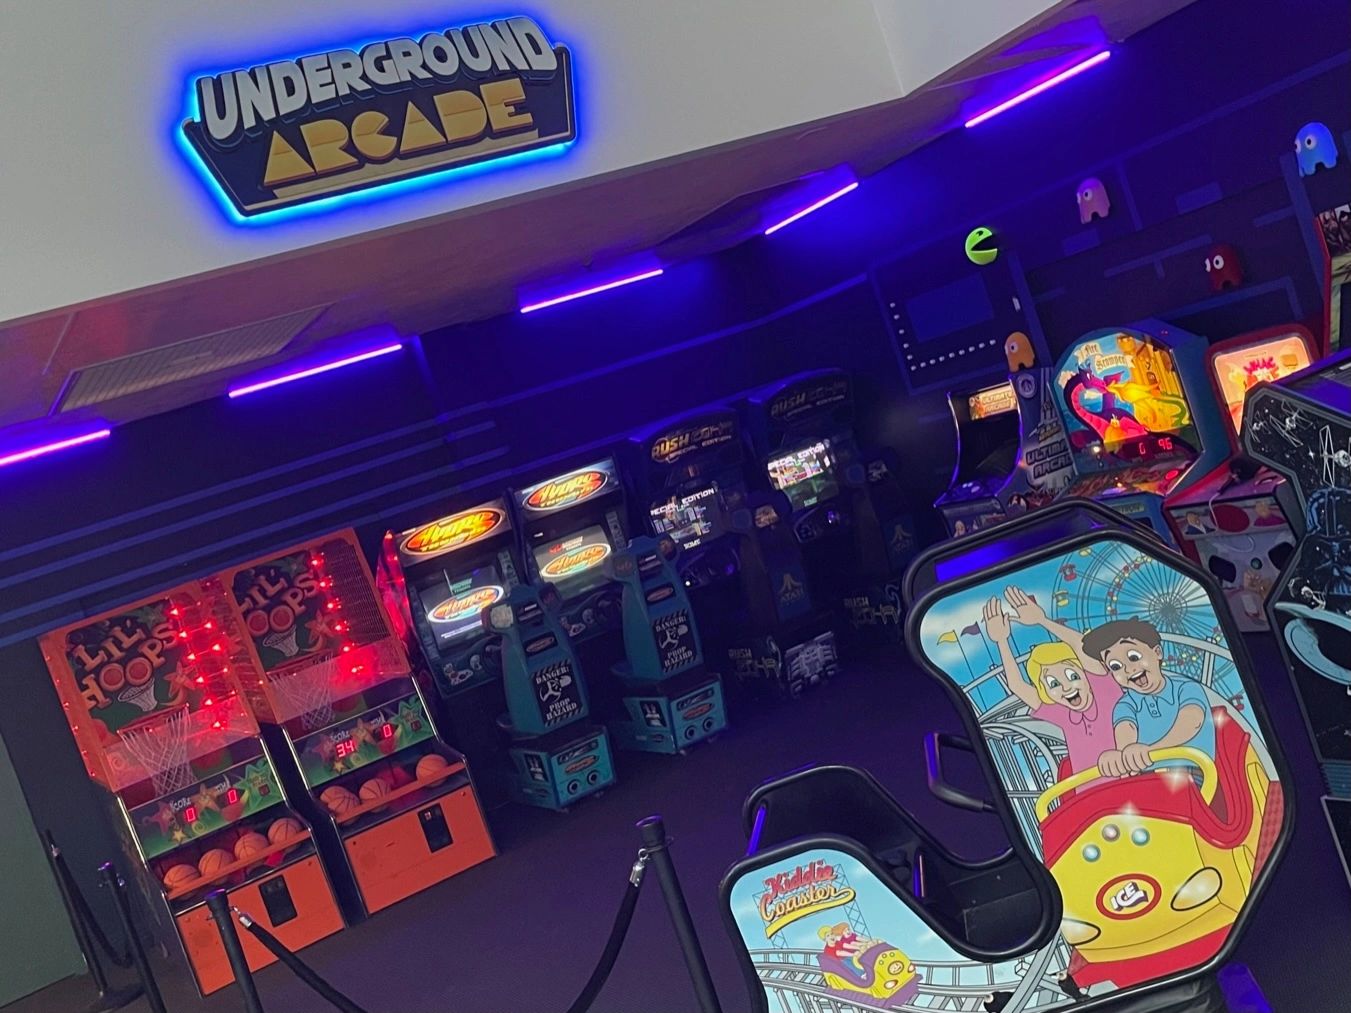 The Underground Arcade